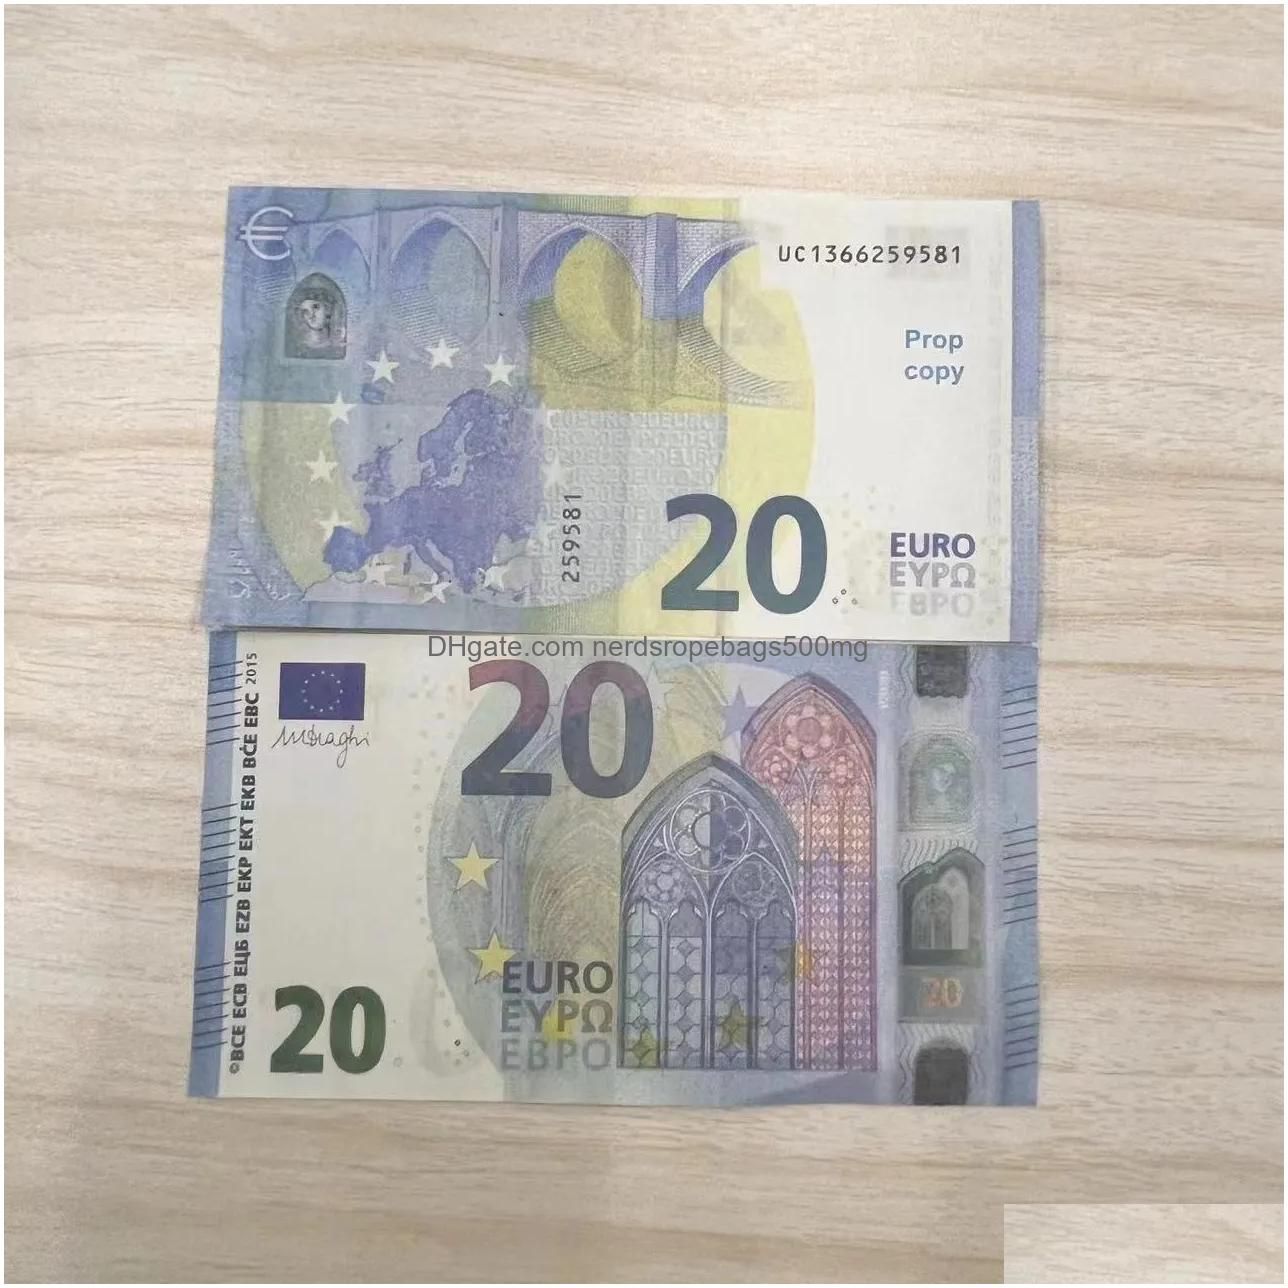 20 Euros